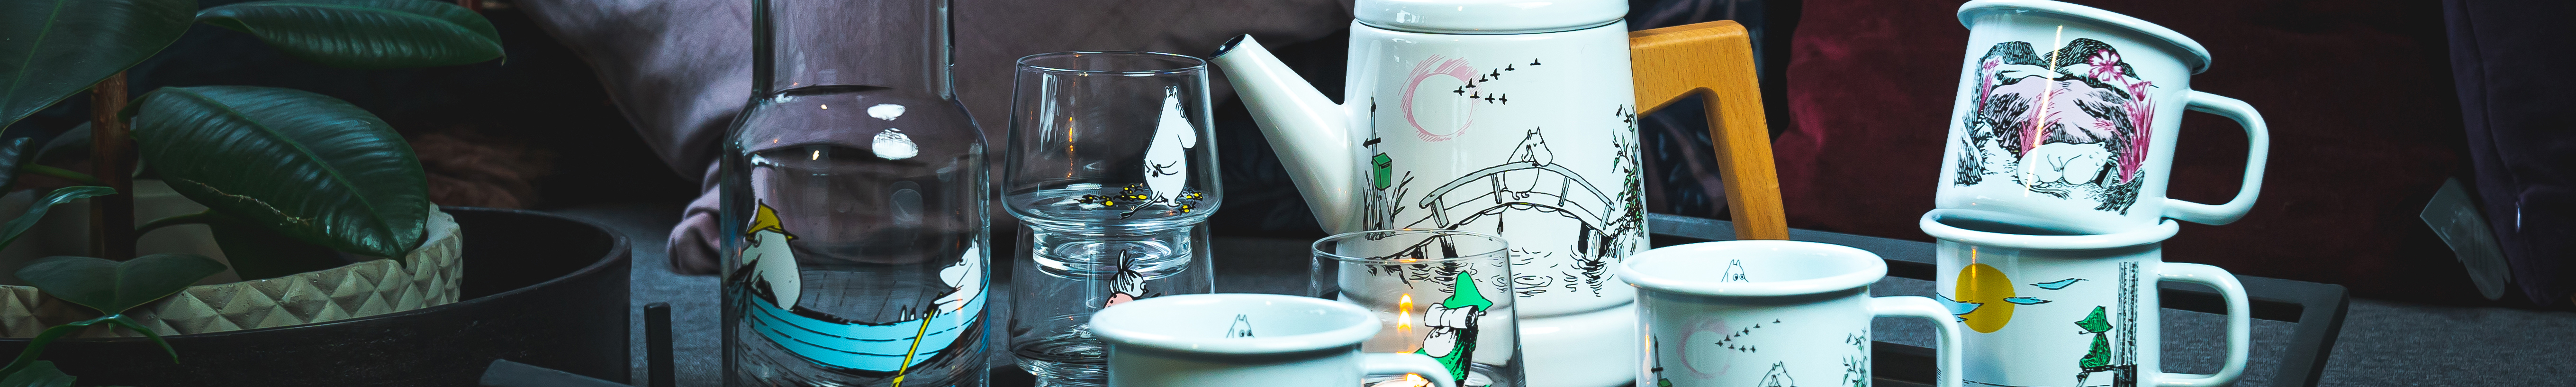 Stunning enamel Moomin kitchenware from Muurla of Finland